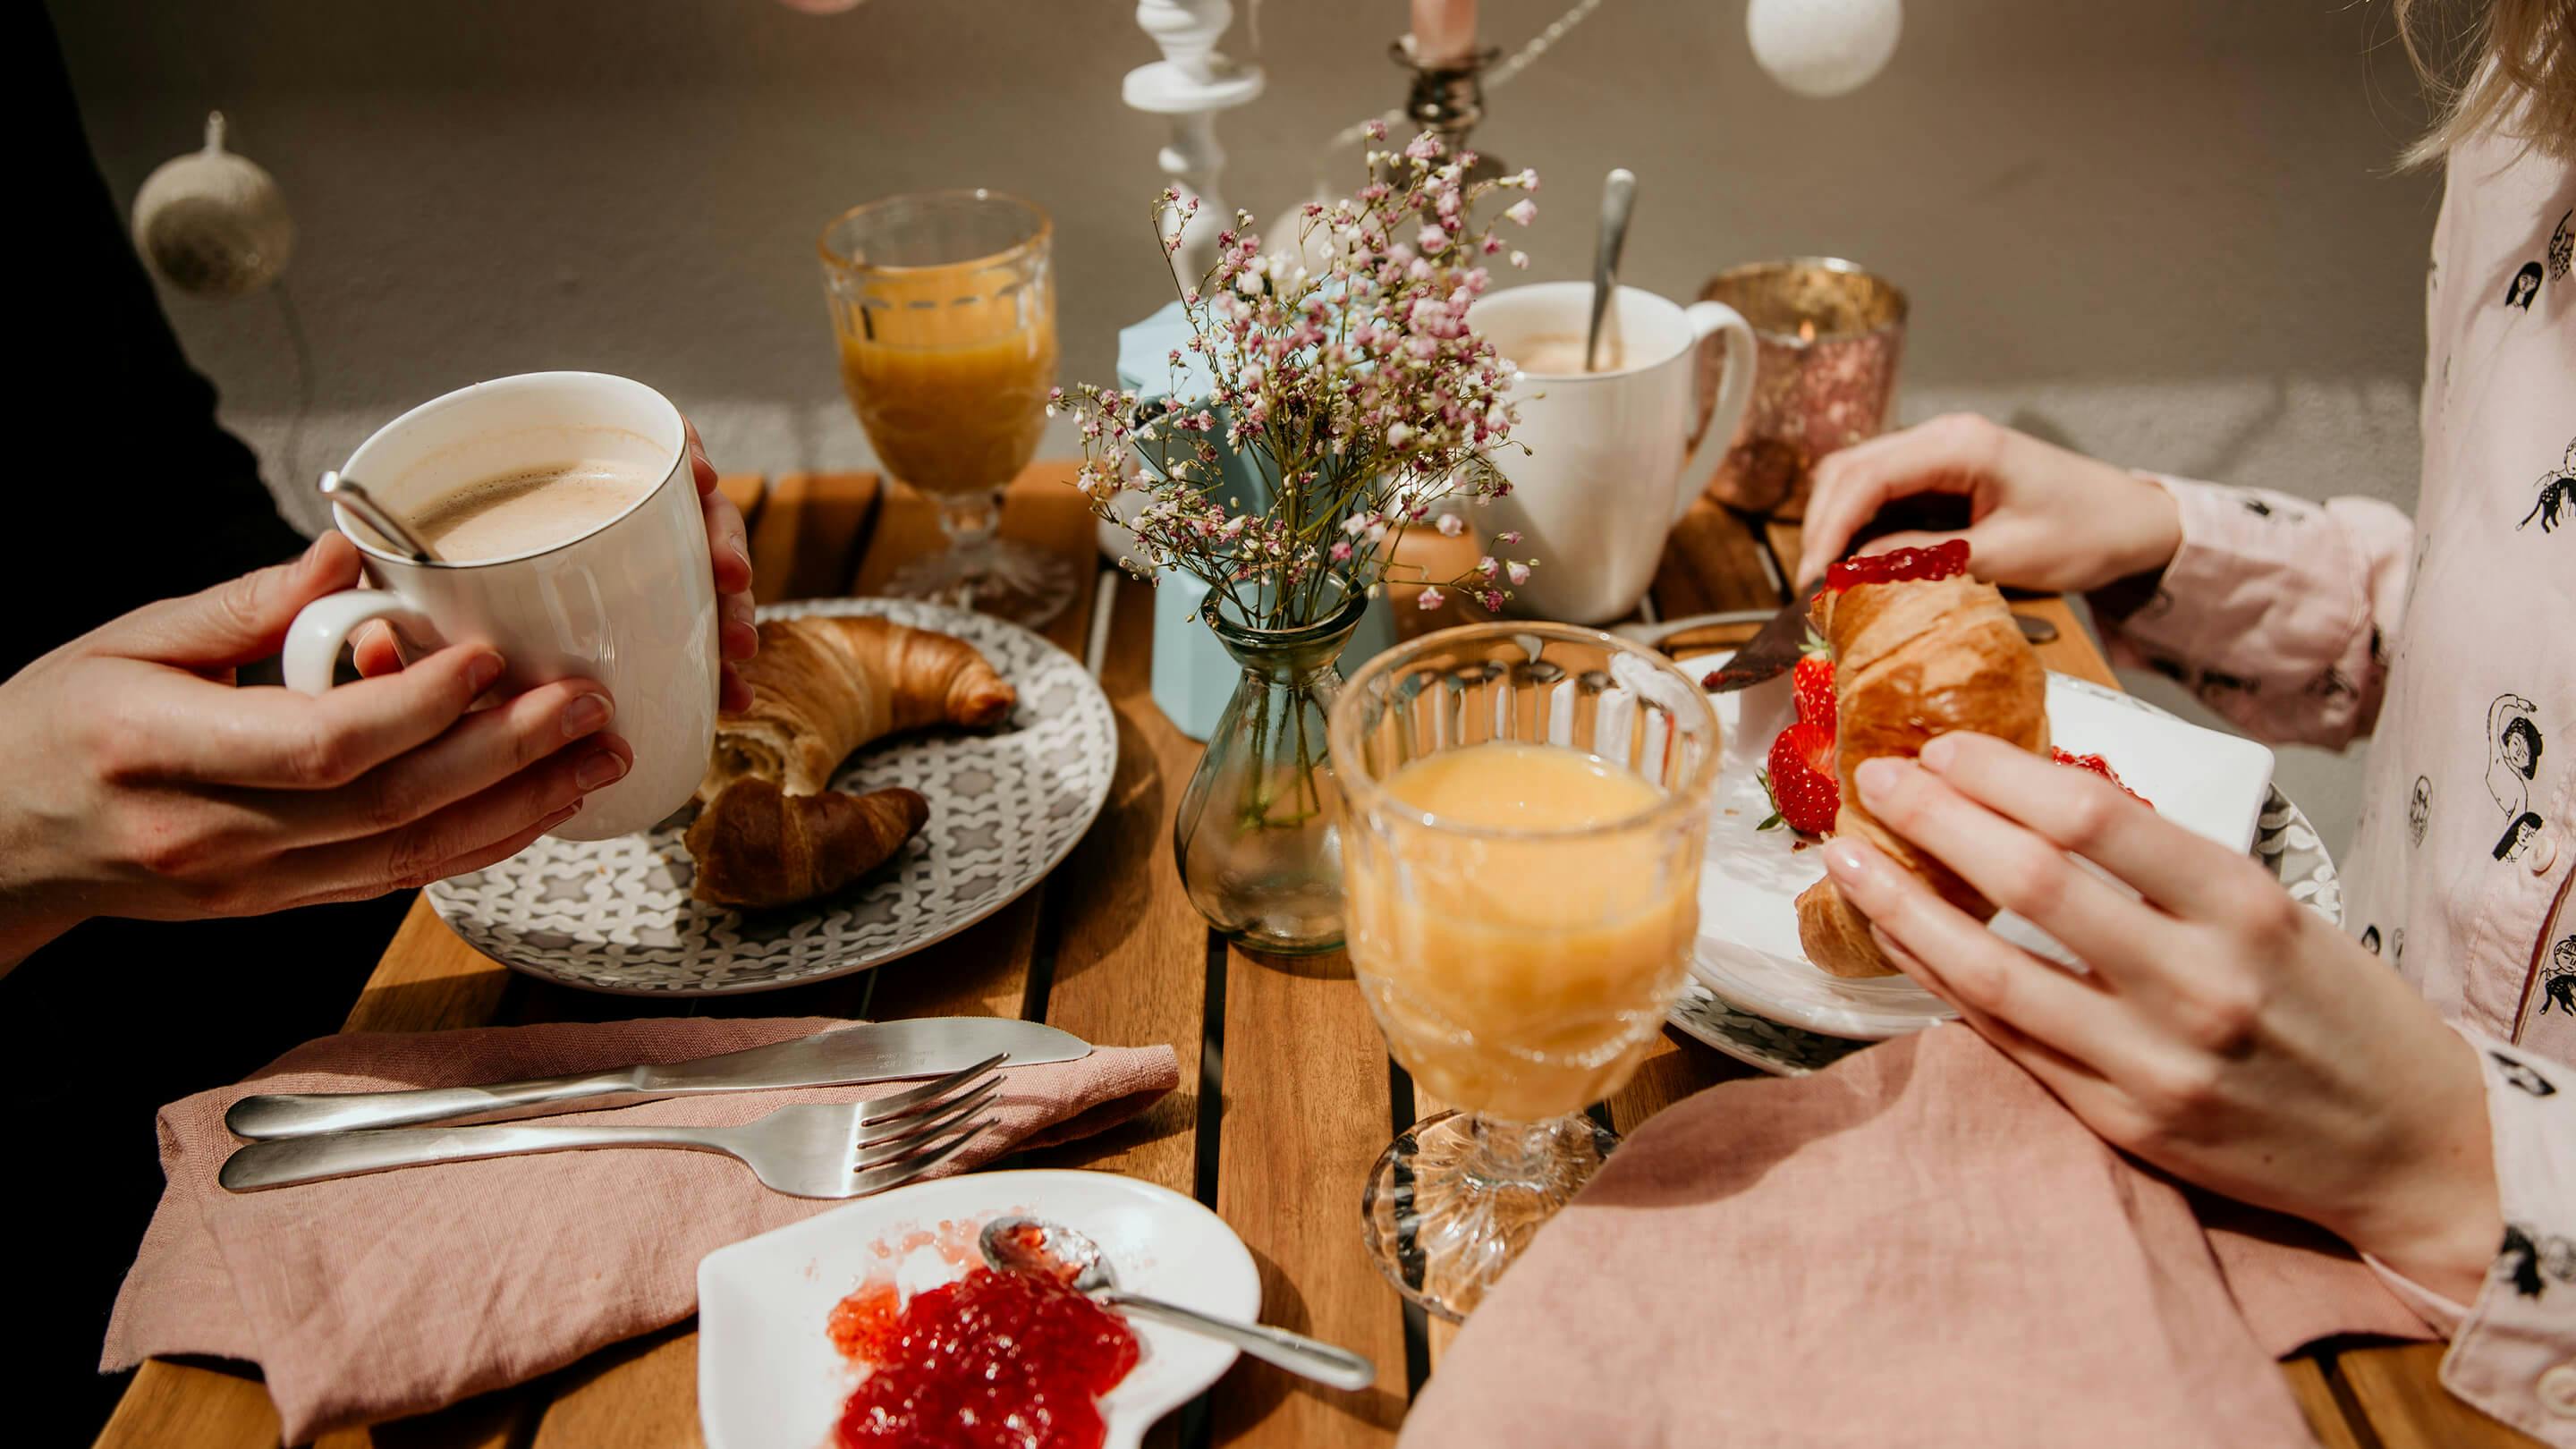 Gedeckter Balkontisch mit Frühstück: Croissants, Marmelade, Gläser mit Saft, Becher mit Kaffee etc. (Marke: Butlers).